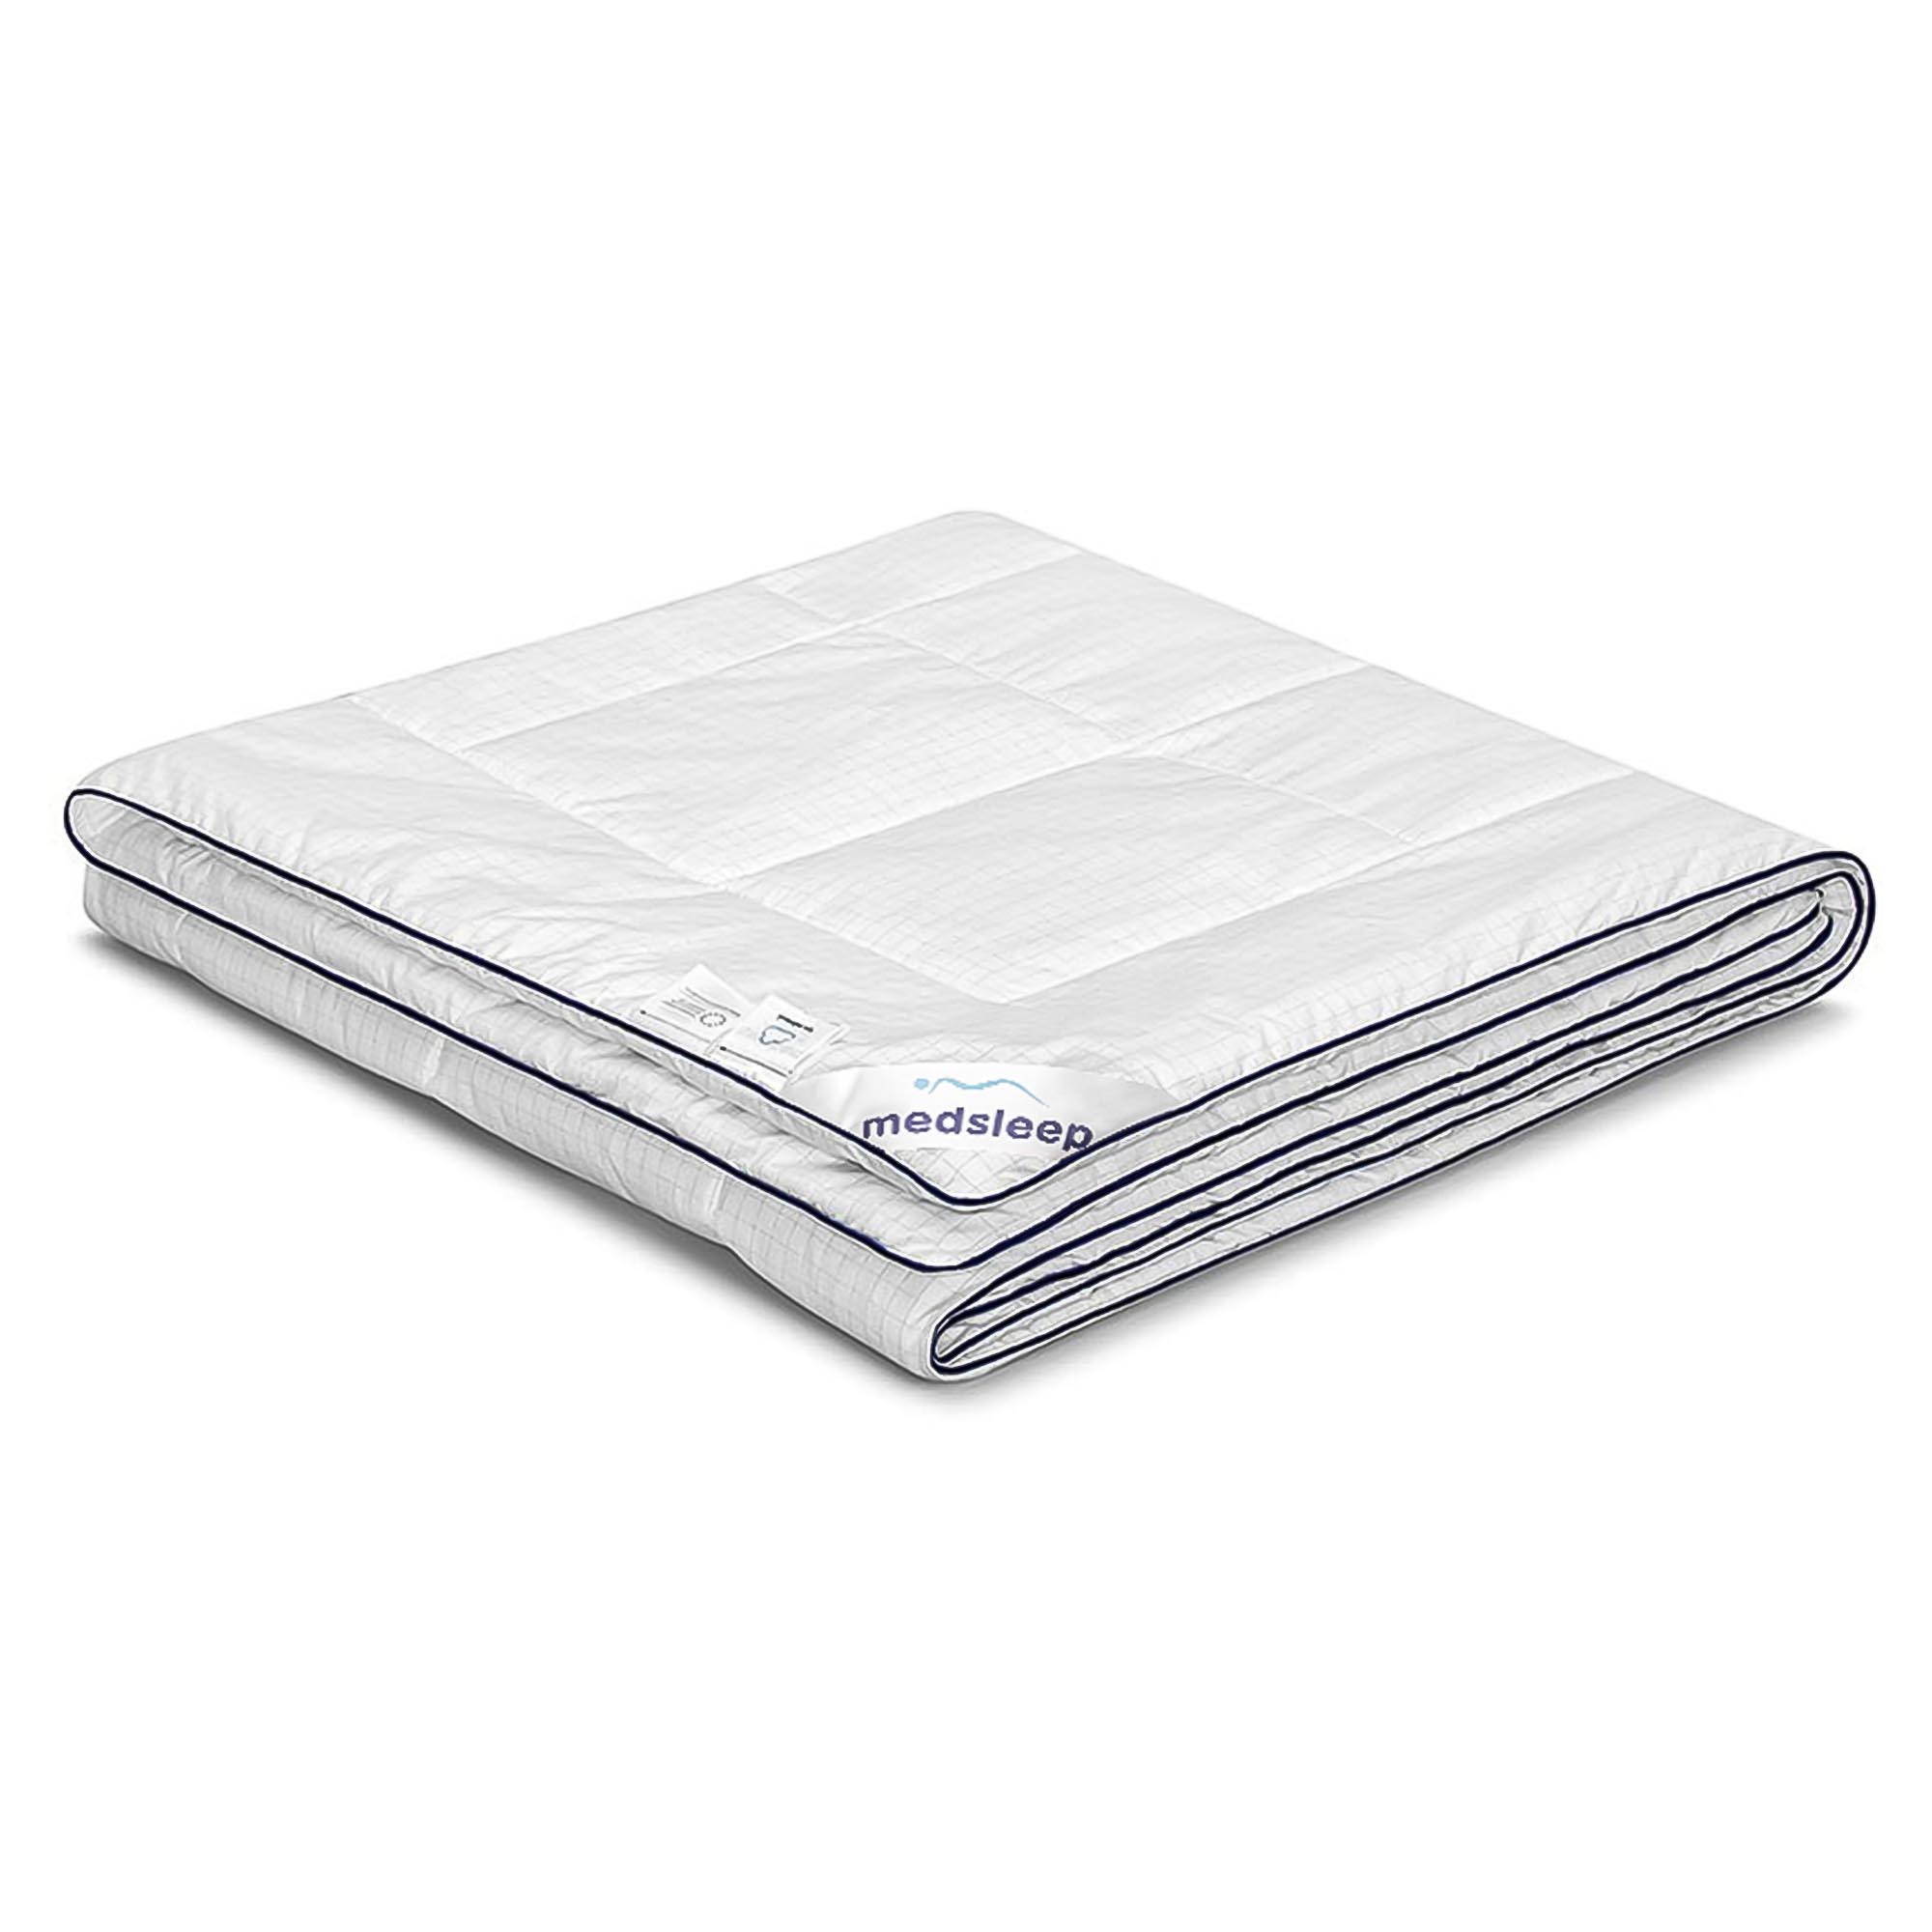 Одеяло Medsleep Nubi белое 140х200 см одеяло лебяжий пух premium р 172х205